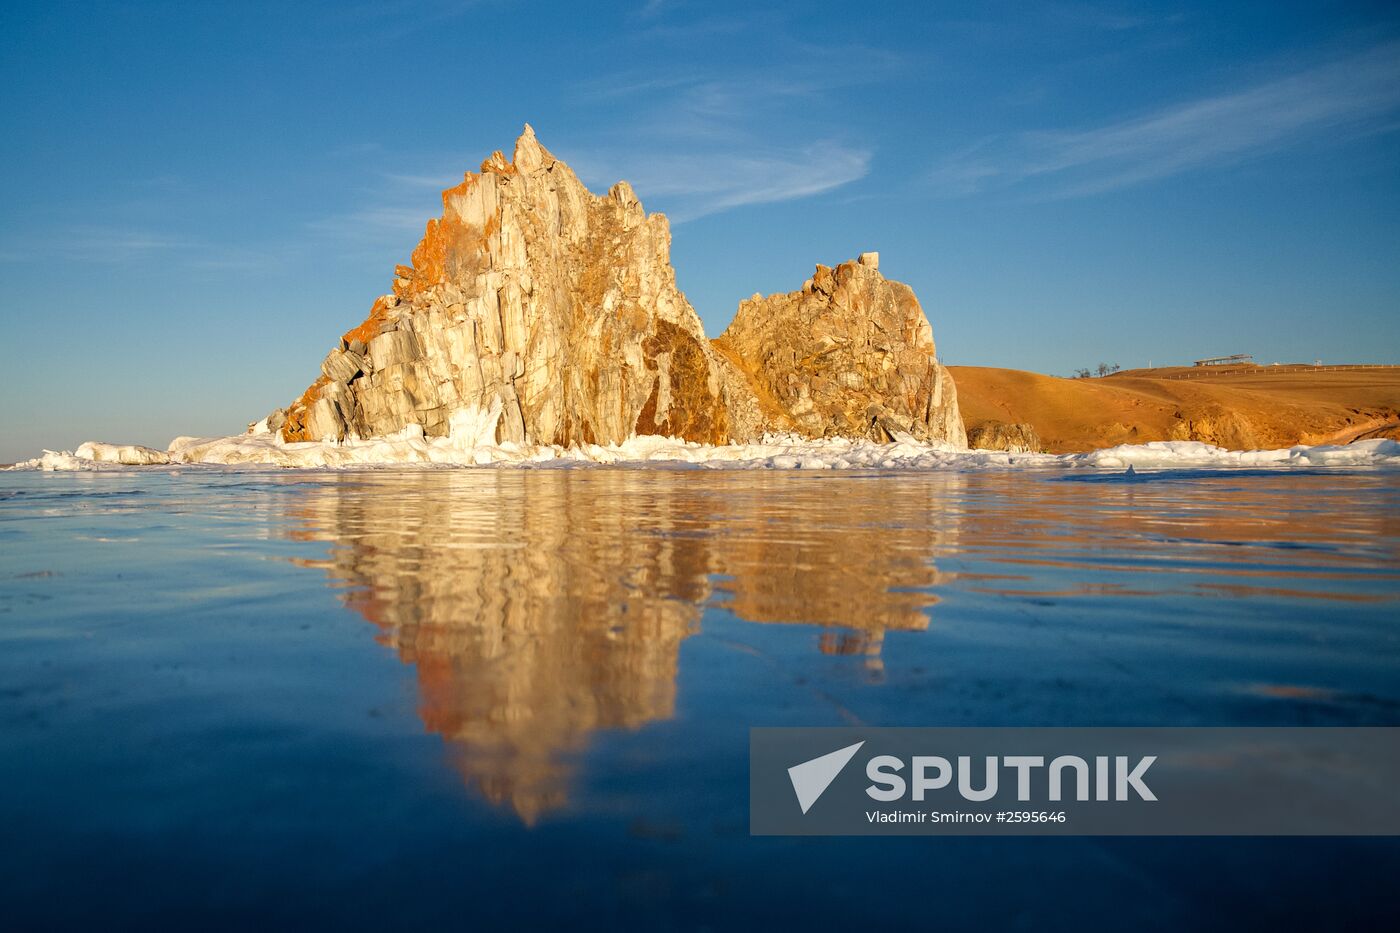 Olkhon Island on the Baikal